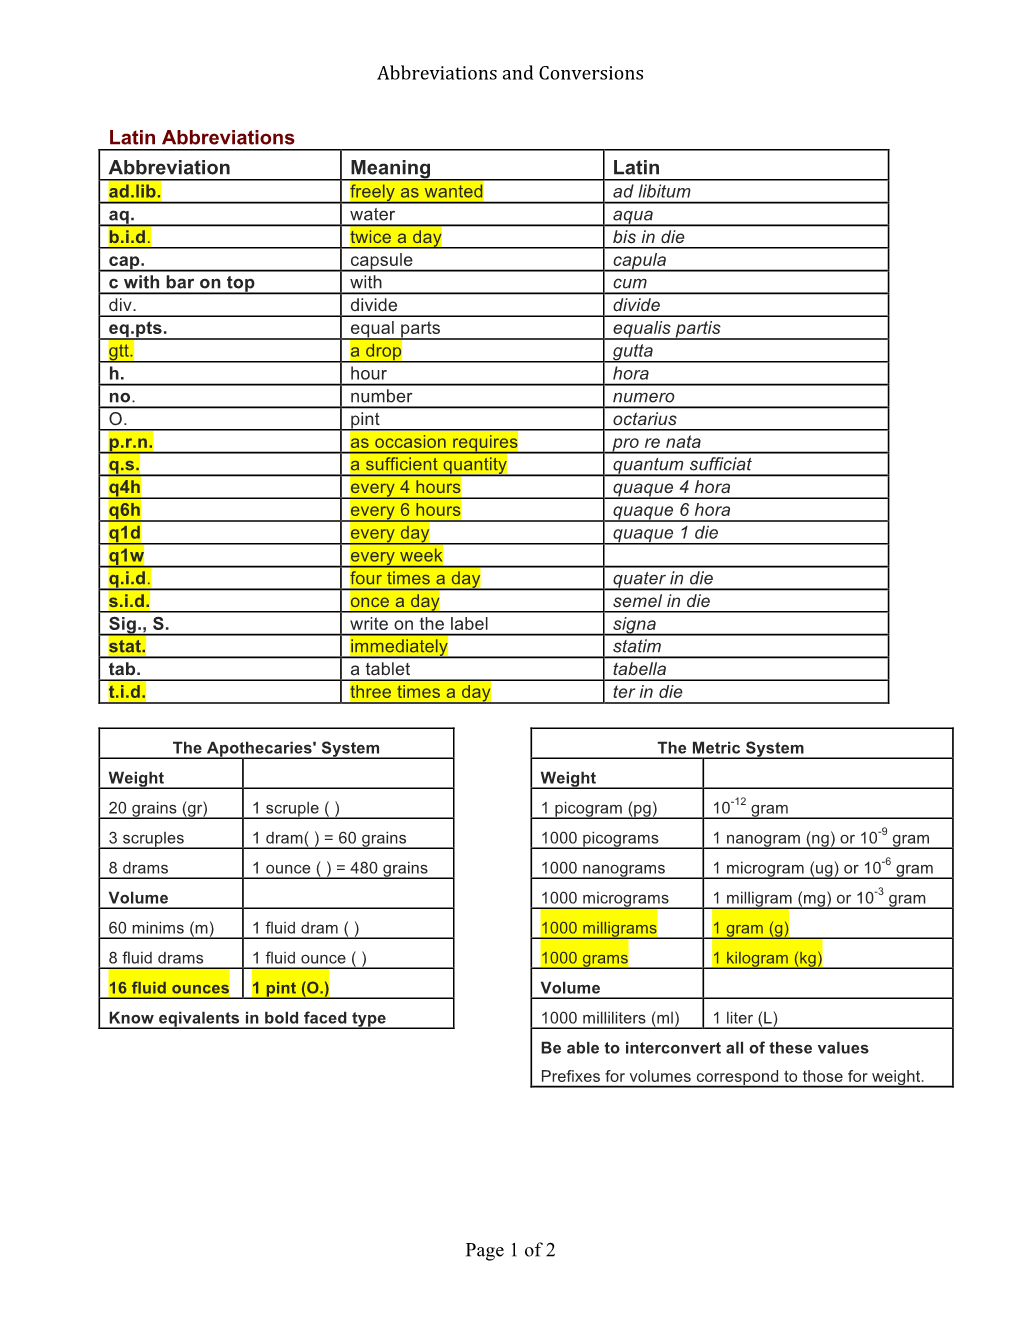 Abbreviations and Conversions Page 1 of 2 Latin Abbreviations